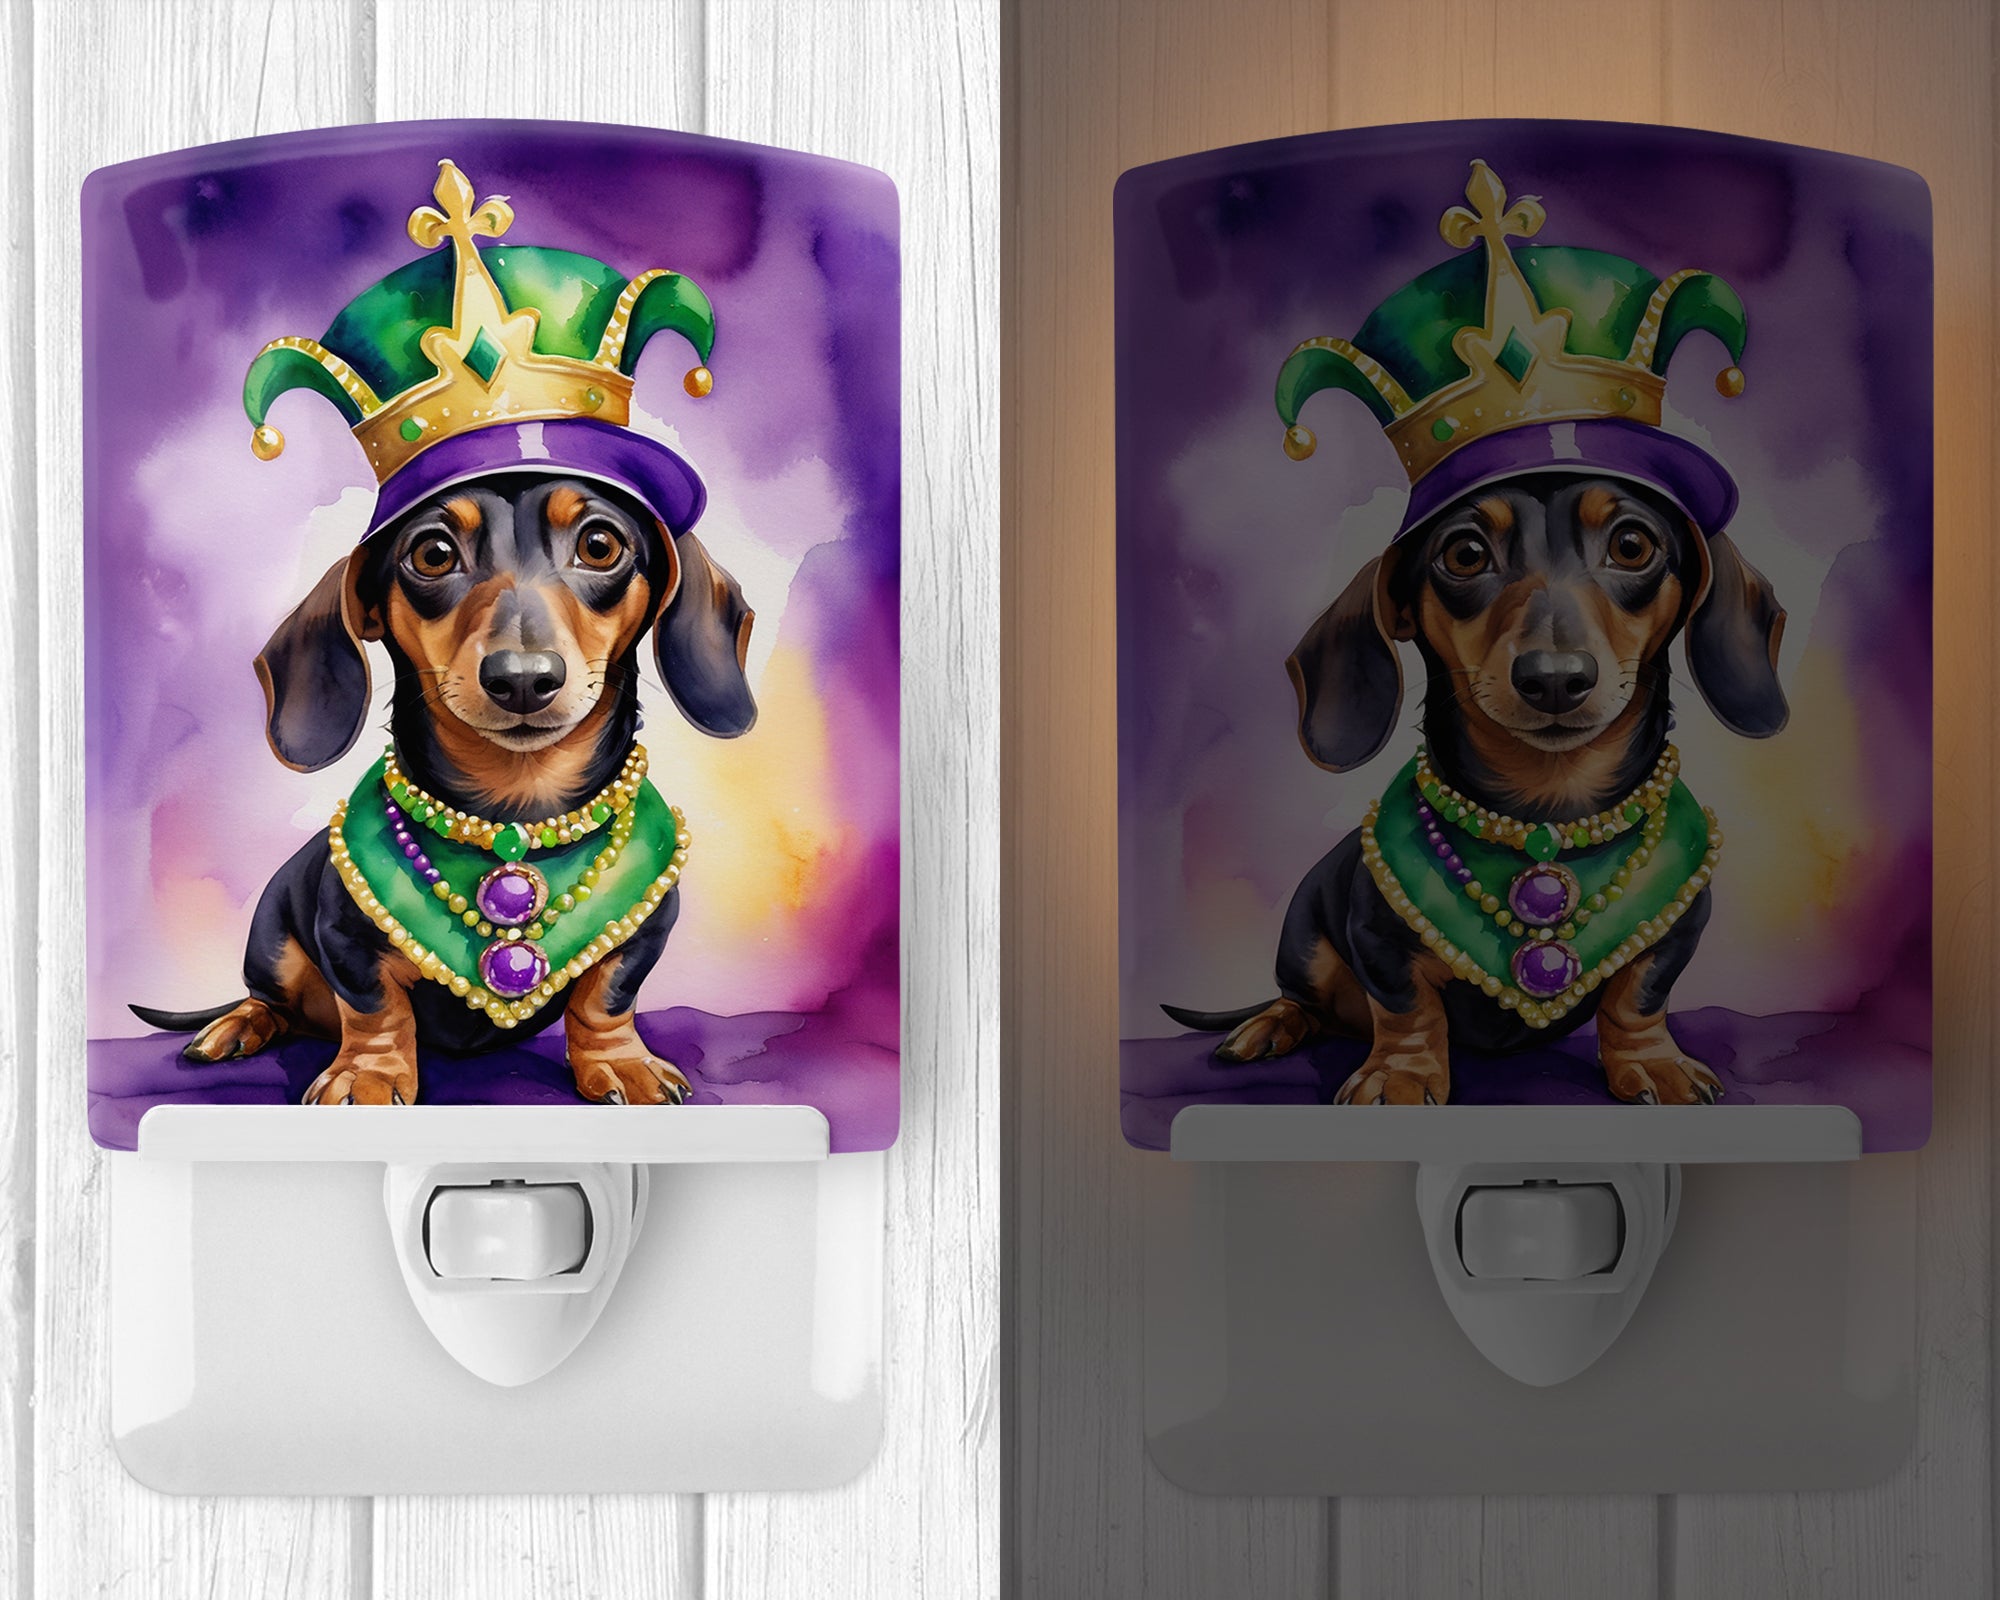 Buy this Dachshund King of Mardi Gras Ceramic Night Light